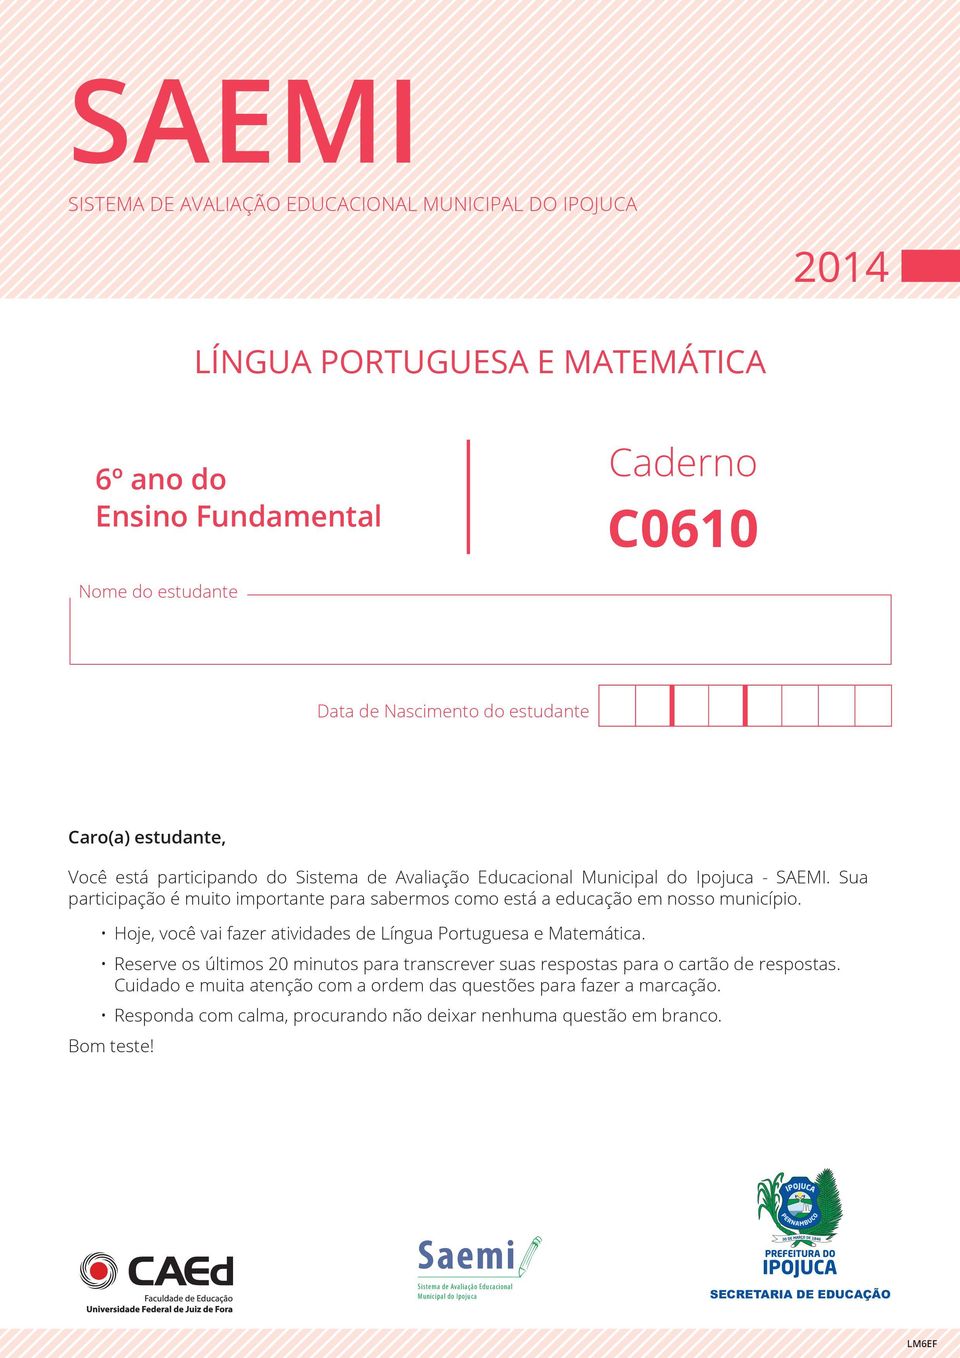 Hoje, você vai fazer atividades de Língua Portuguesa e Matemática. Reserve os últimos 20 minutos para transcrever suas respostas para o cartão de respostas.